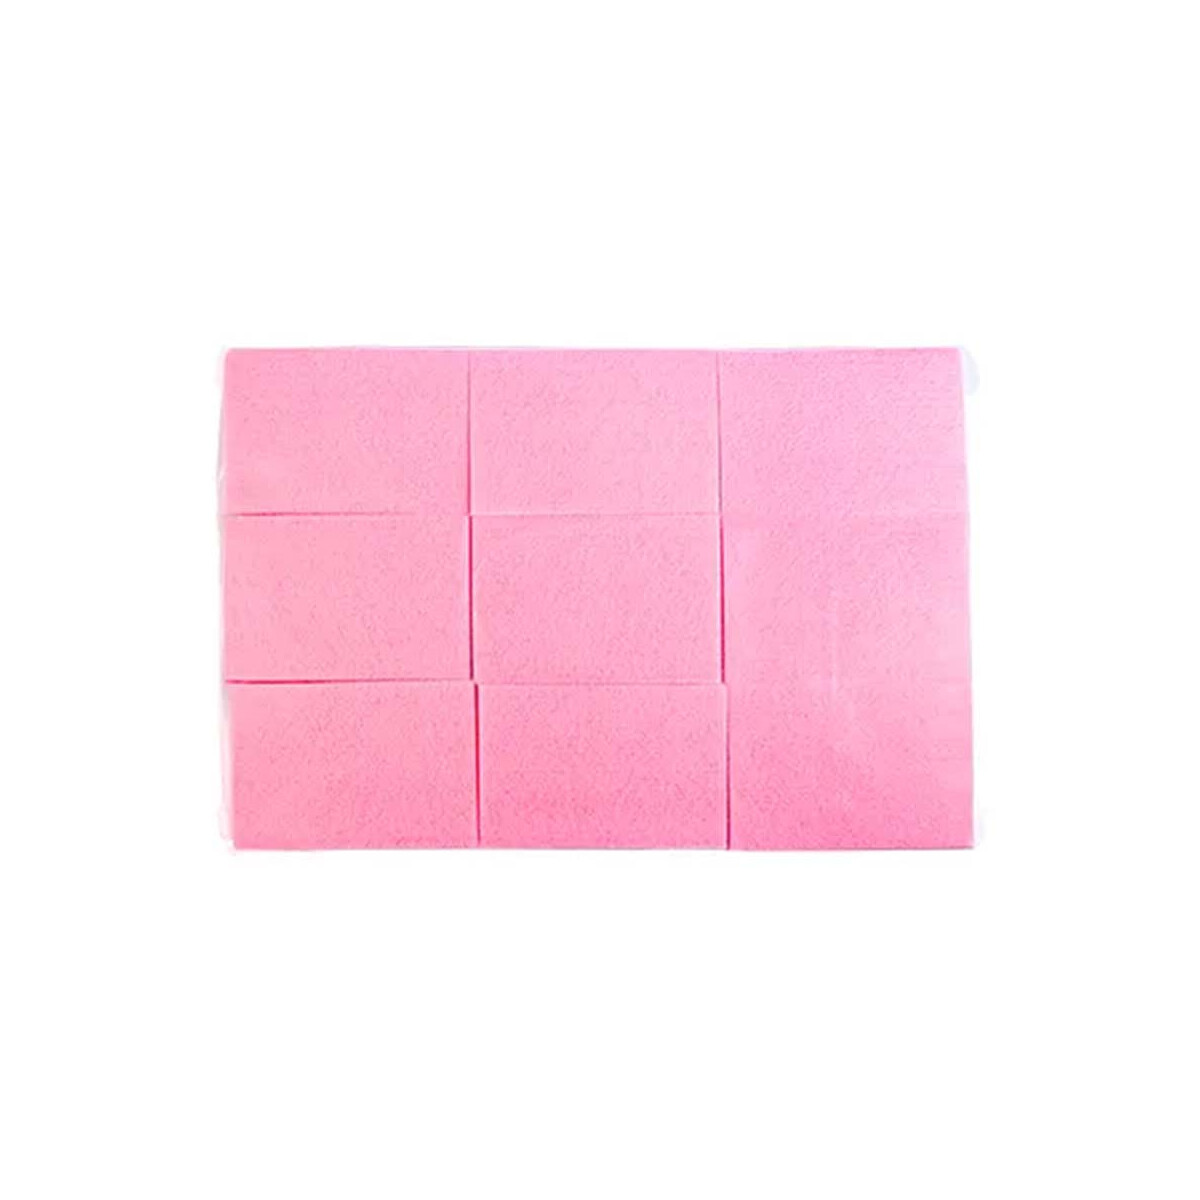 Zelletten Pads Pink 640 Stk.